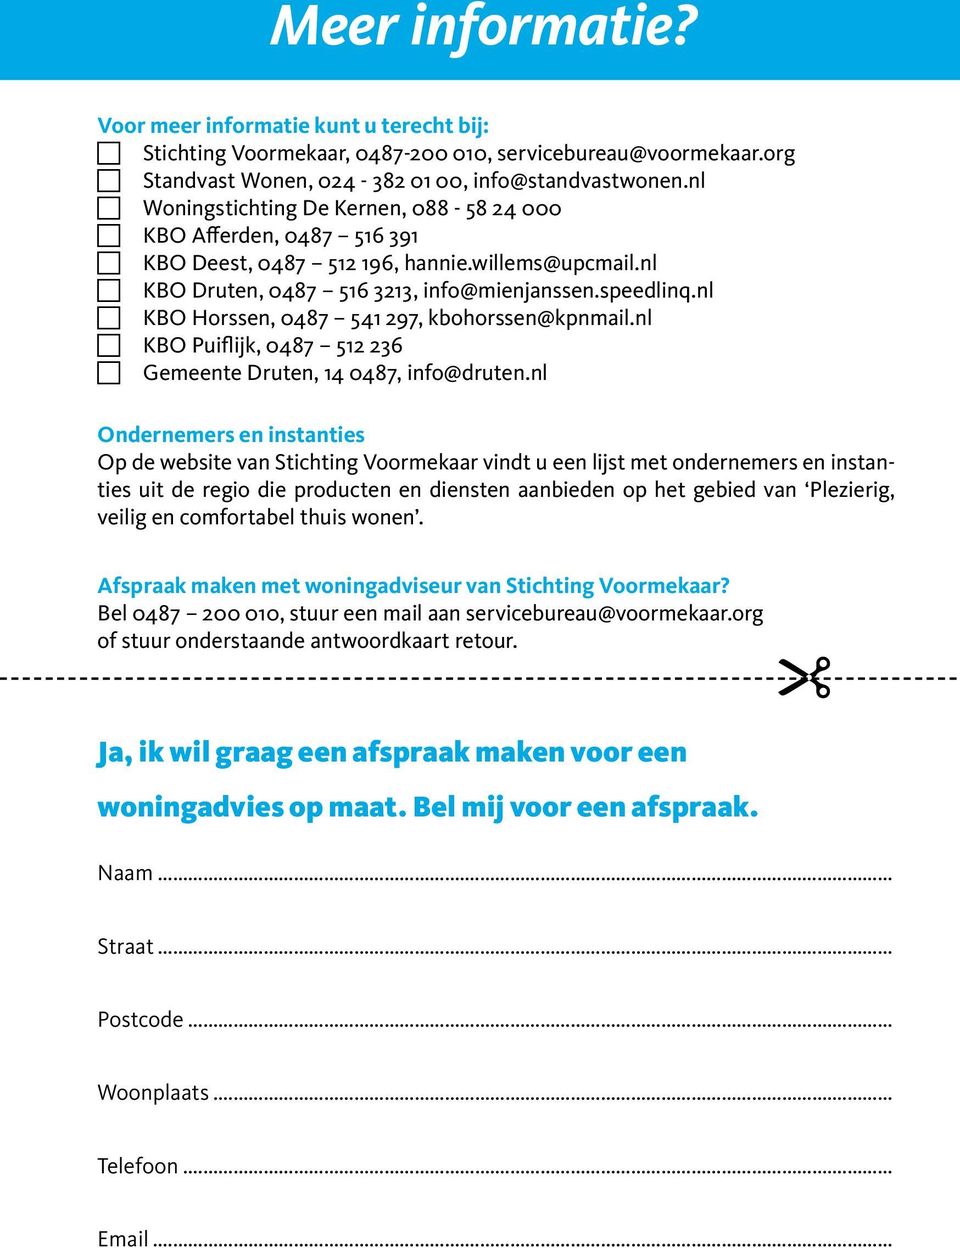 nl KBO Horssen, 0487 541 297, kbohorssen@kpnmail.nl KBO Puiflijk, 0487 512 236 Gemeente Druten, 14 0487, info@druten.